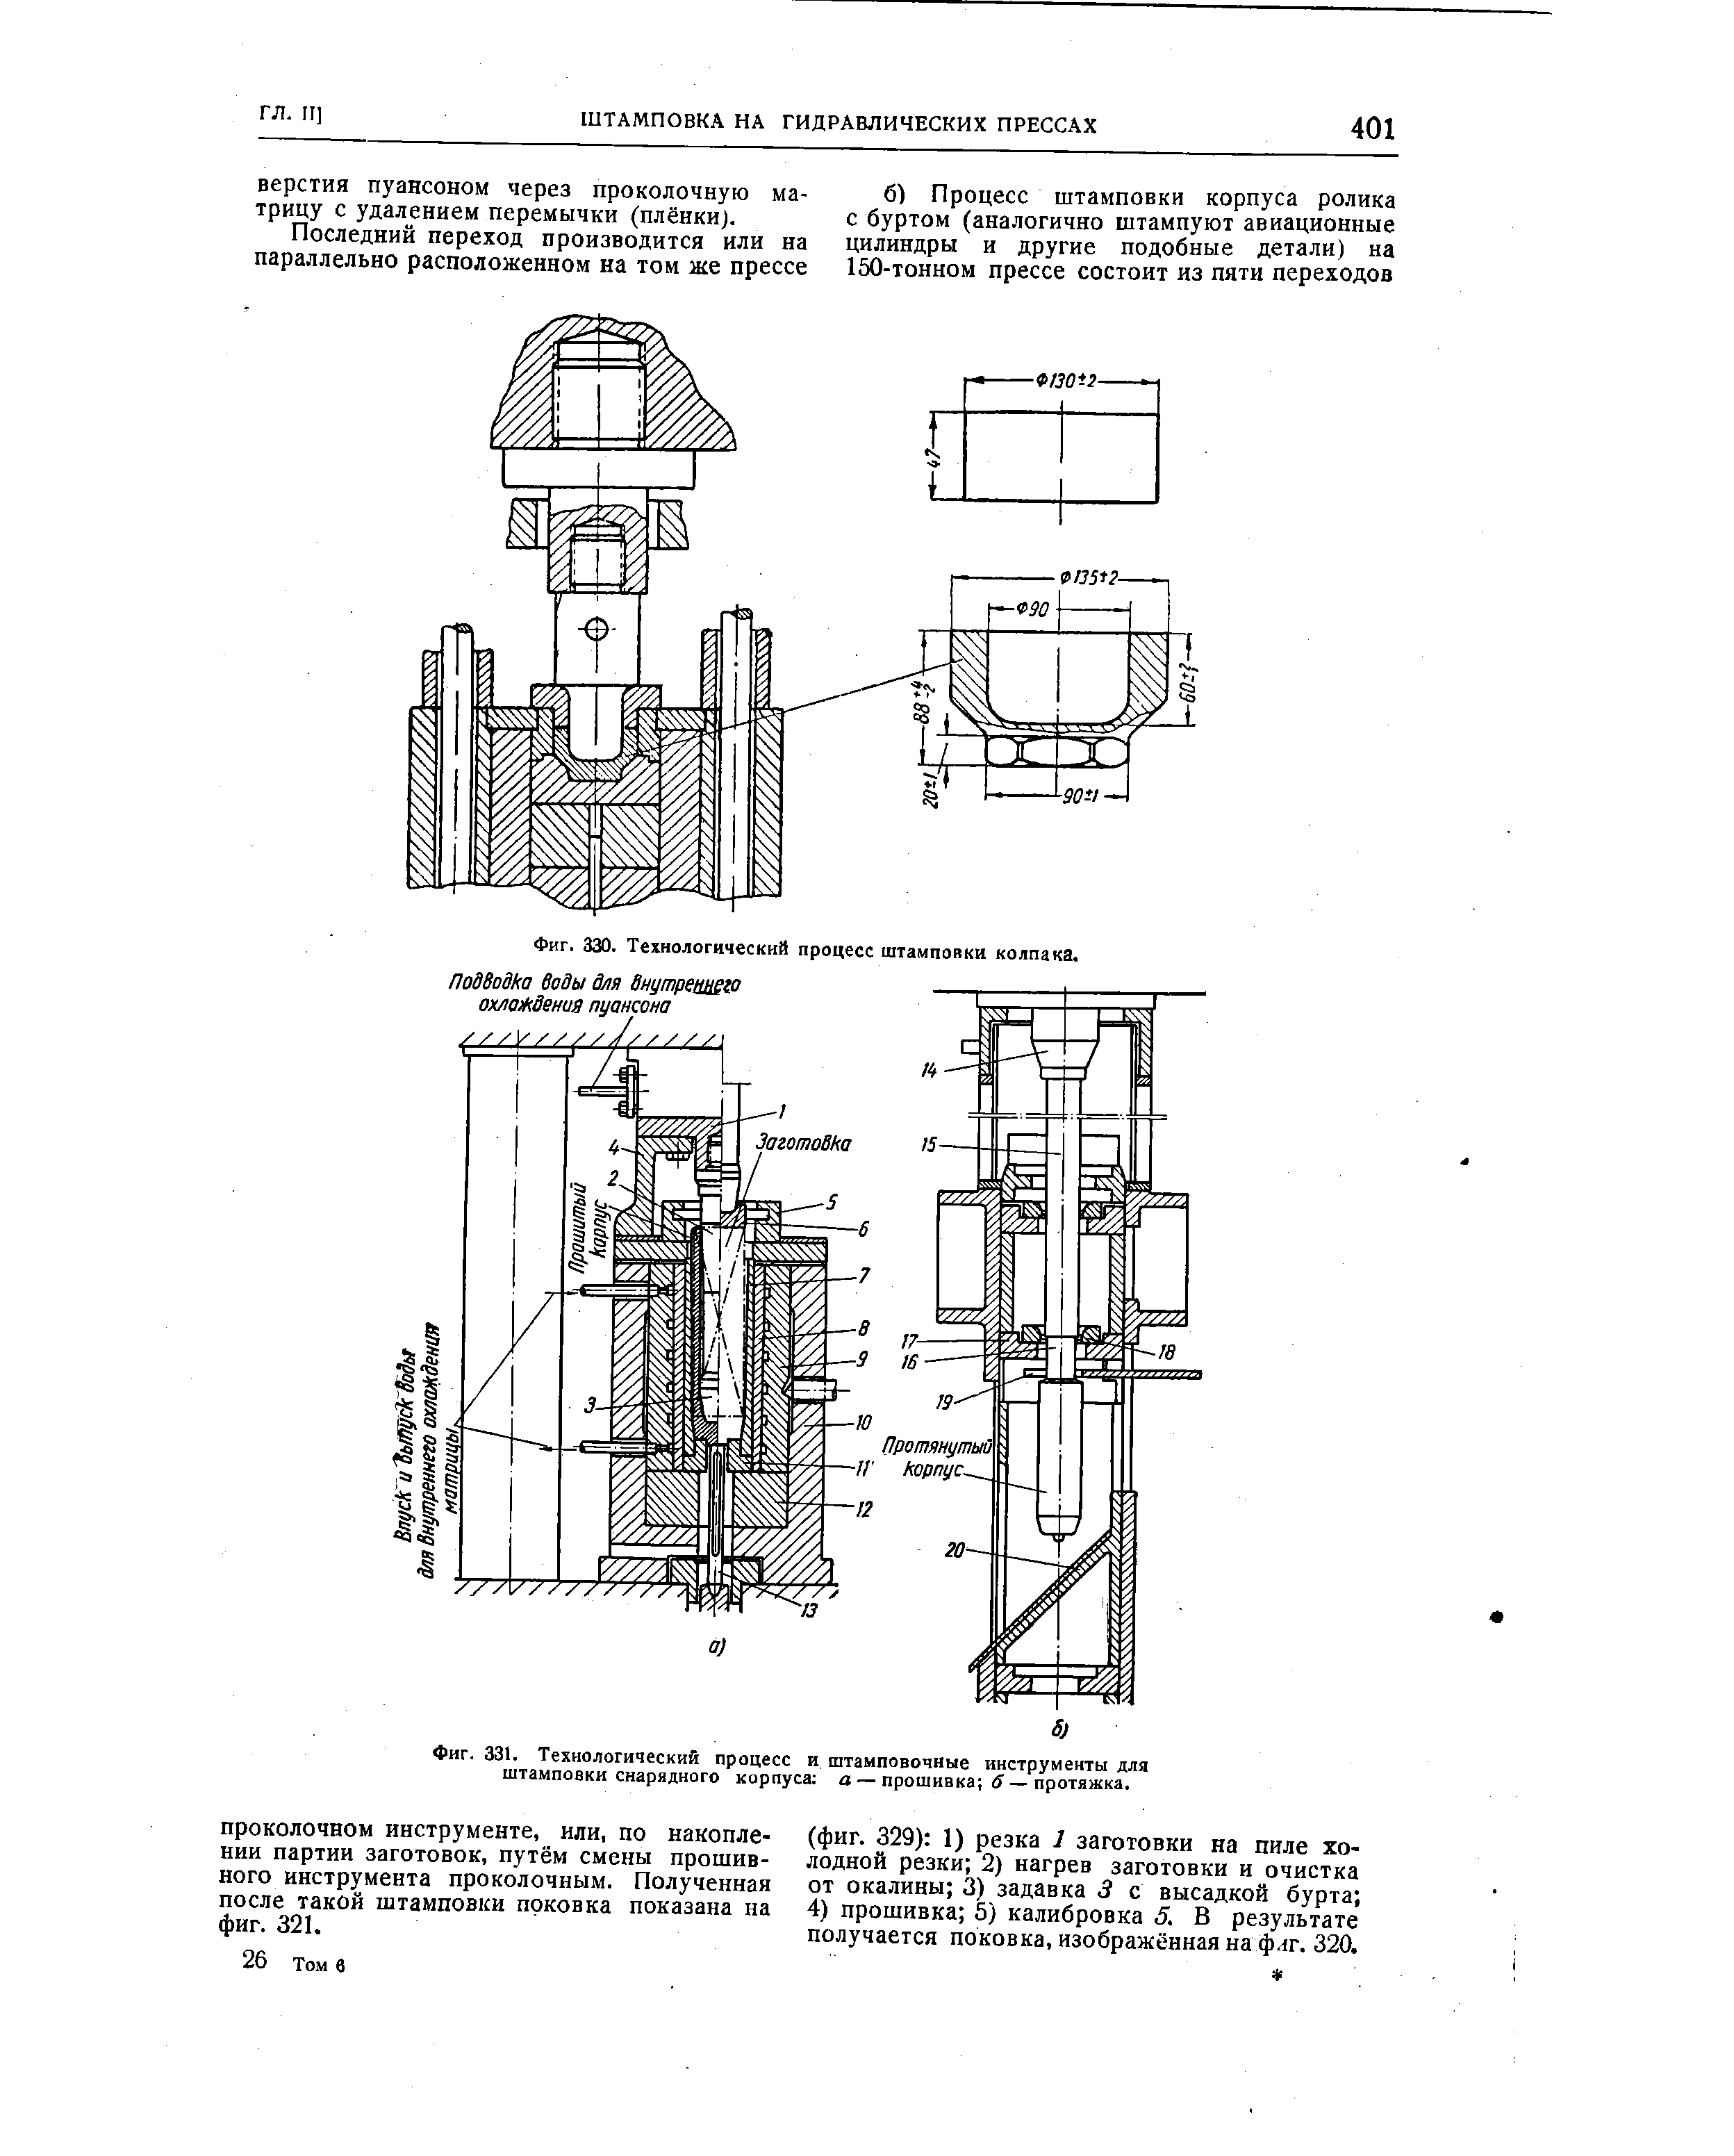 Фиг. 331. Технологический процесс и штамповочные инструмеиты для штамповки снарядного корпуса а — прошивка d — протяжка.
